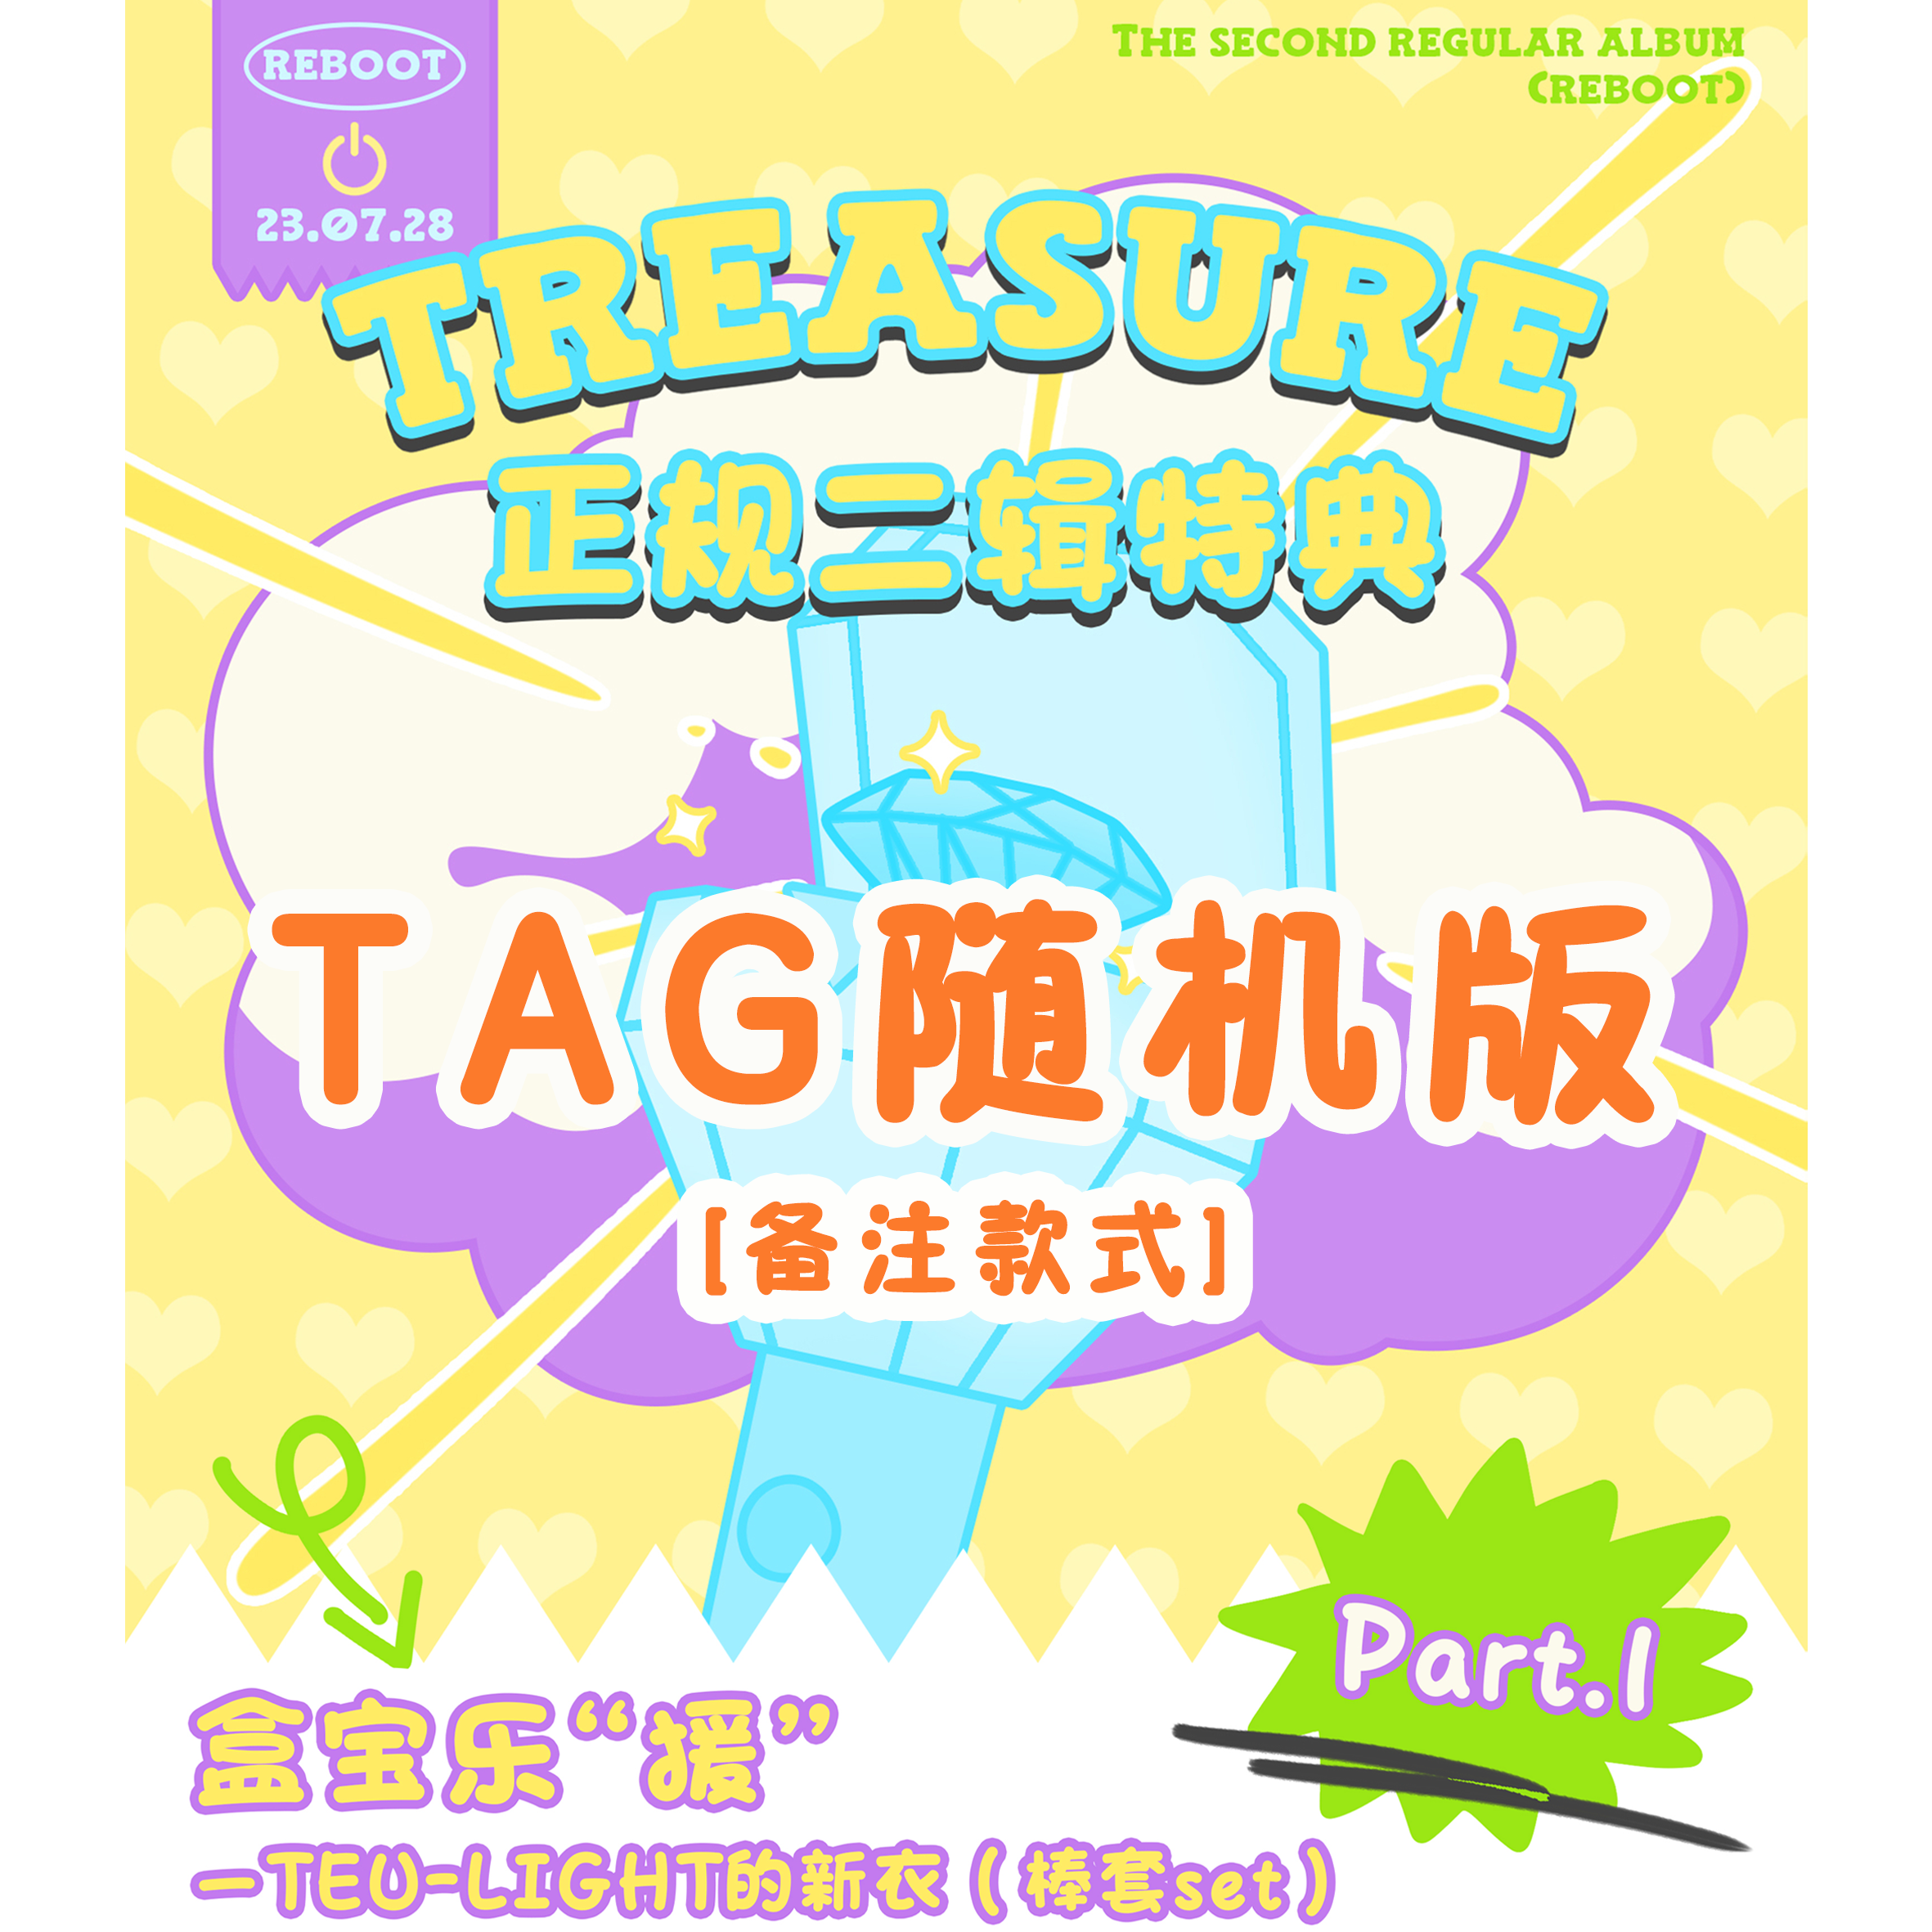 [全款 棒套 特典专] [Ktown4u Special Gift] TREASURE - 2ND FULL ALBUM [REBOOT] YG TAG ALBUM (随机版本)_TREASURE盒首